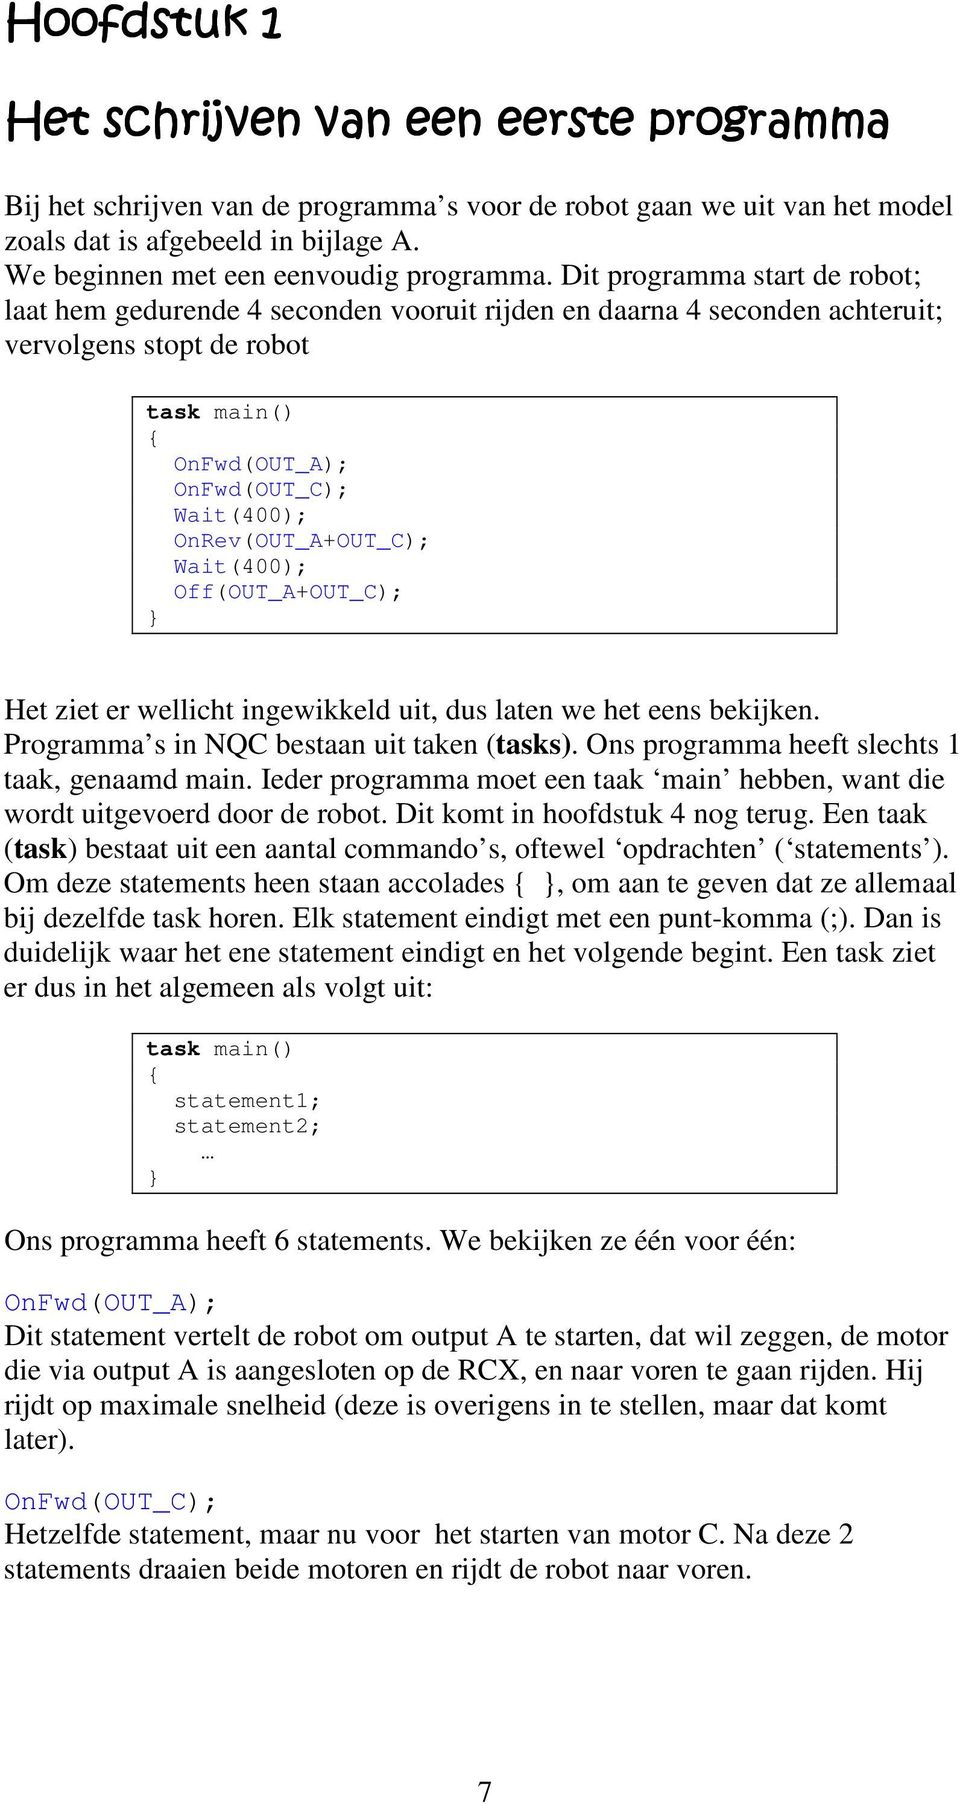 Wait(400); Off(OUT_A+OUT_C); Het ziet er wellicht ingewikkeld uit, dus laten we het eens bekijken. Programma s in NQC bestaan uit taken (tasks). Ons programma heeft slechts 1 taak, genaamd main.